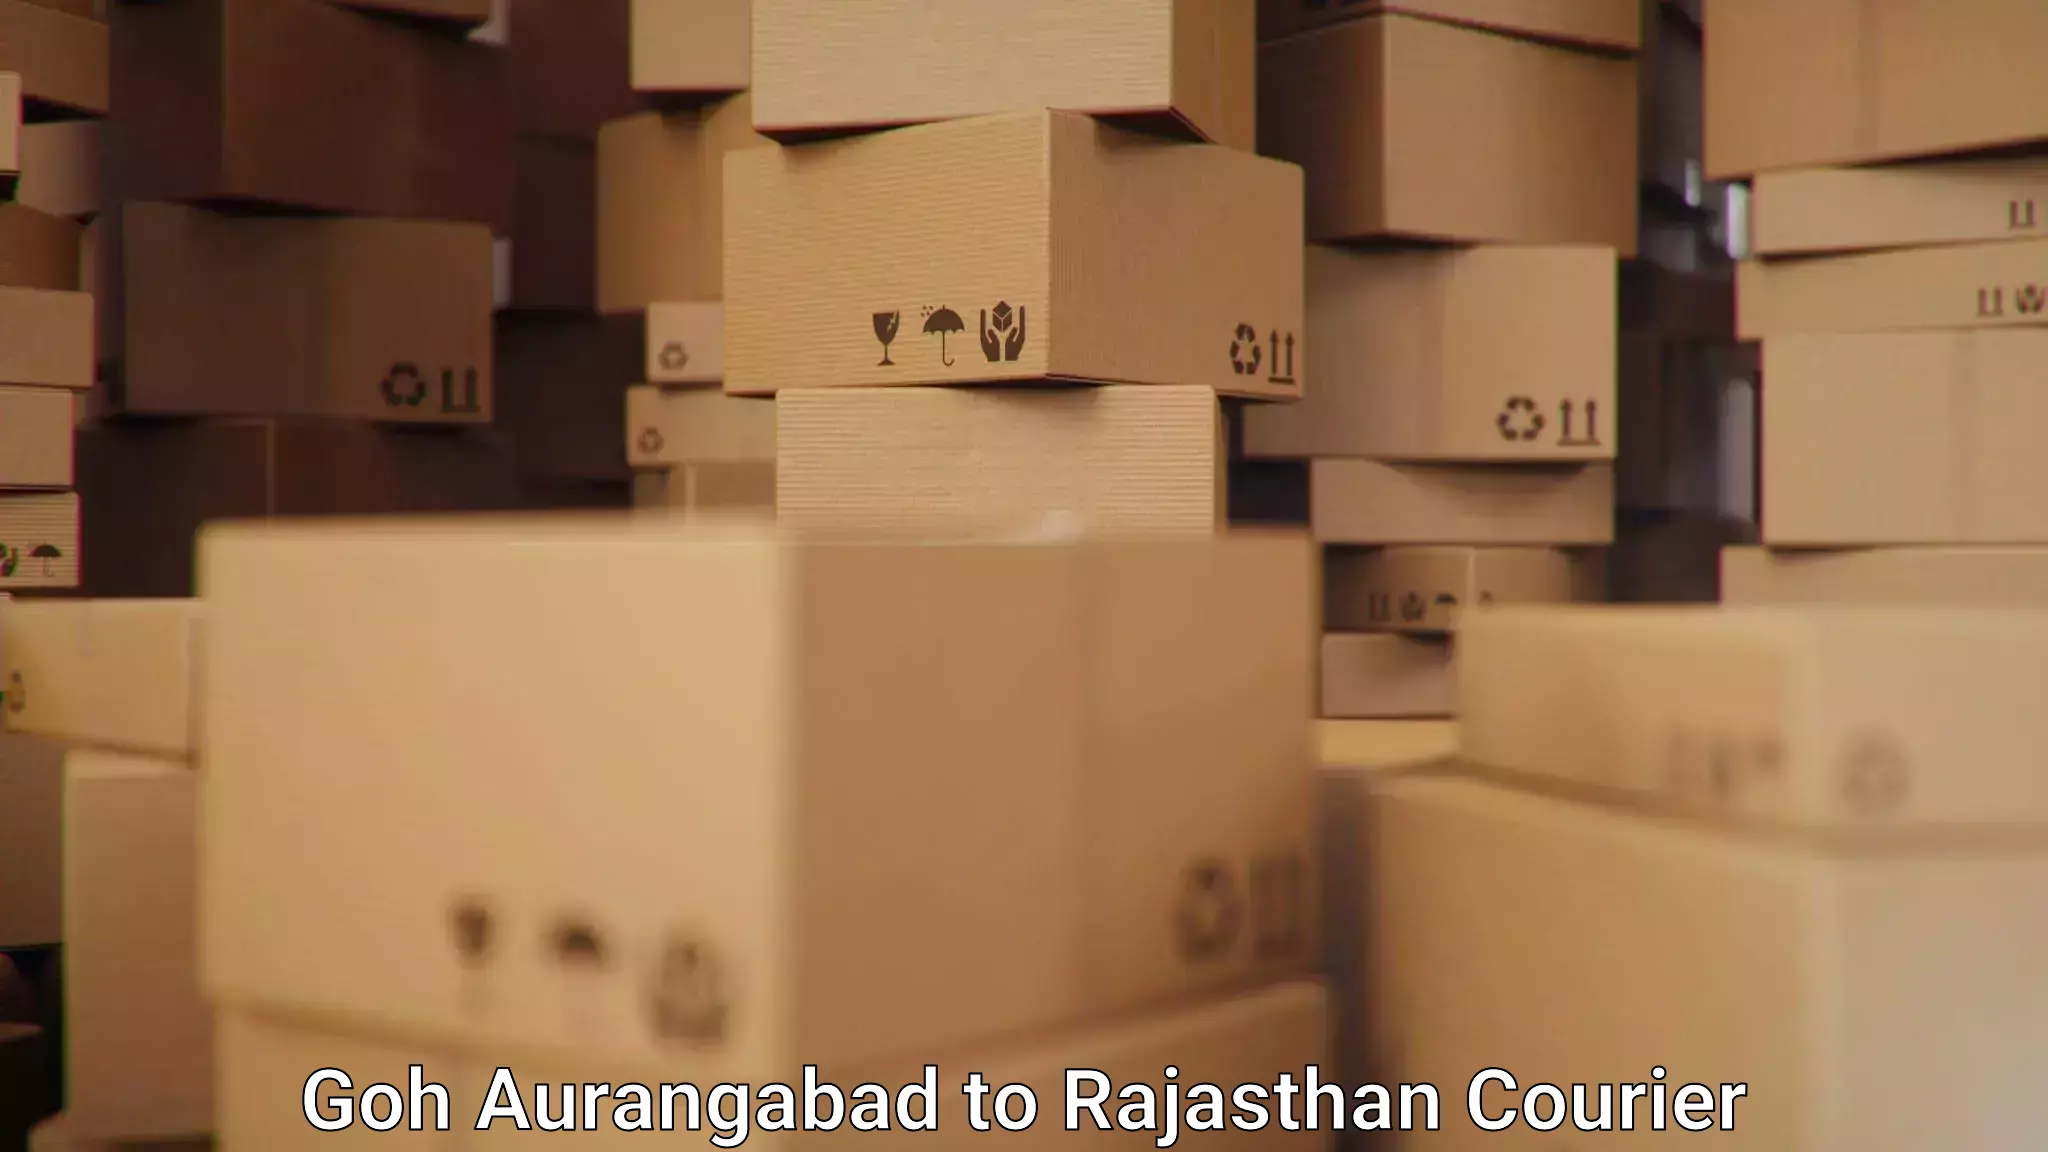 Optimized delivery routes Goh Aurangabad to Shrimadhopur